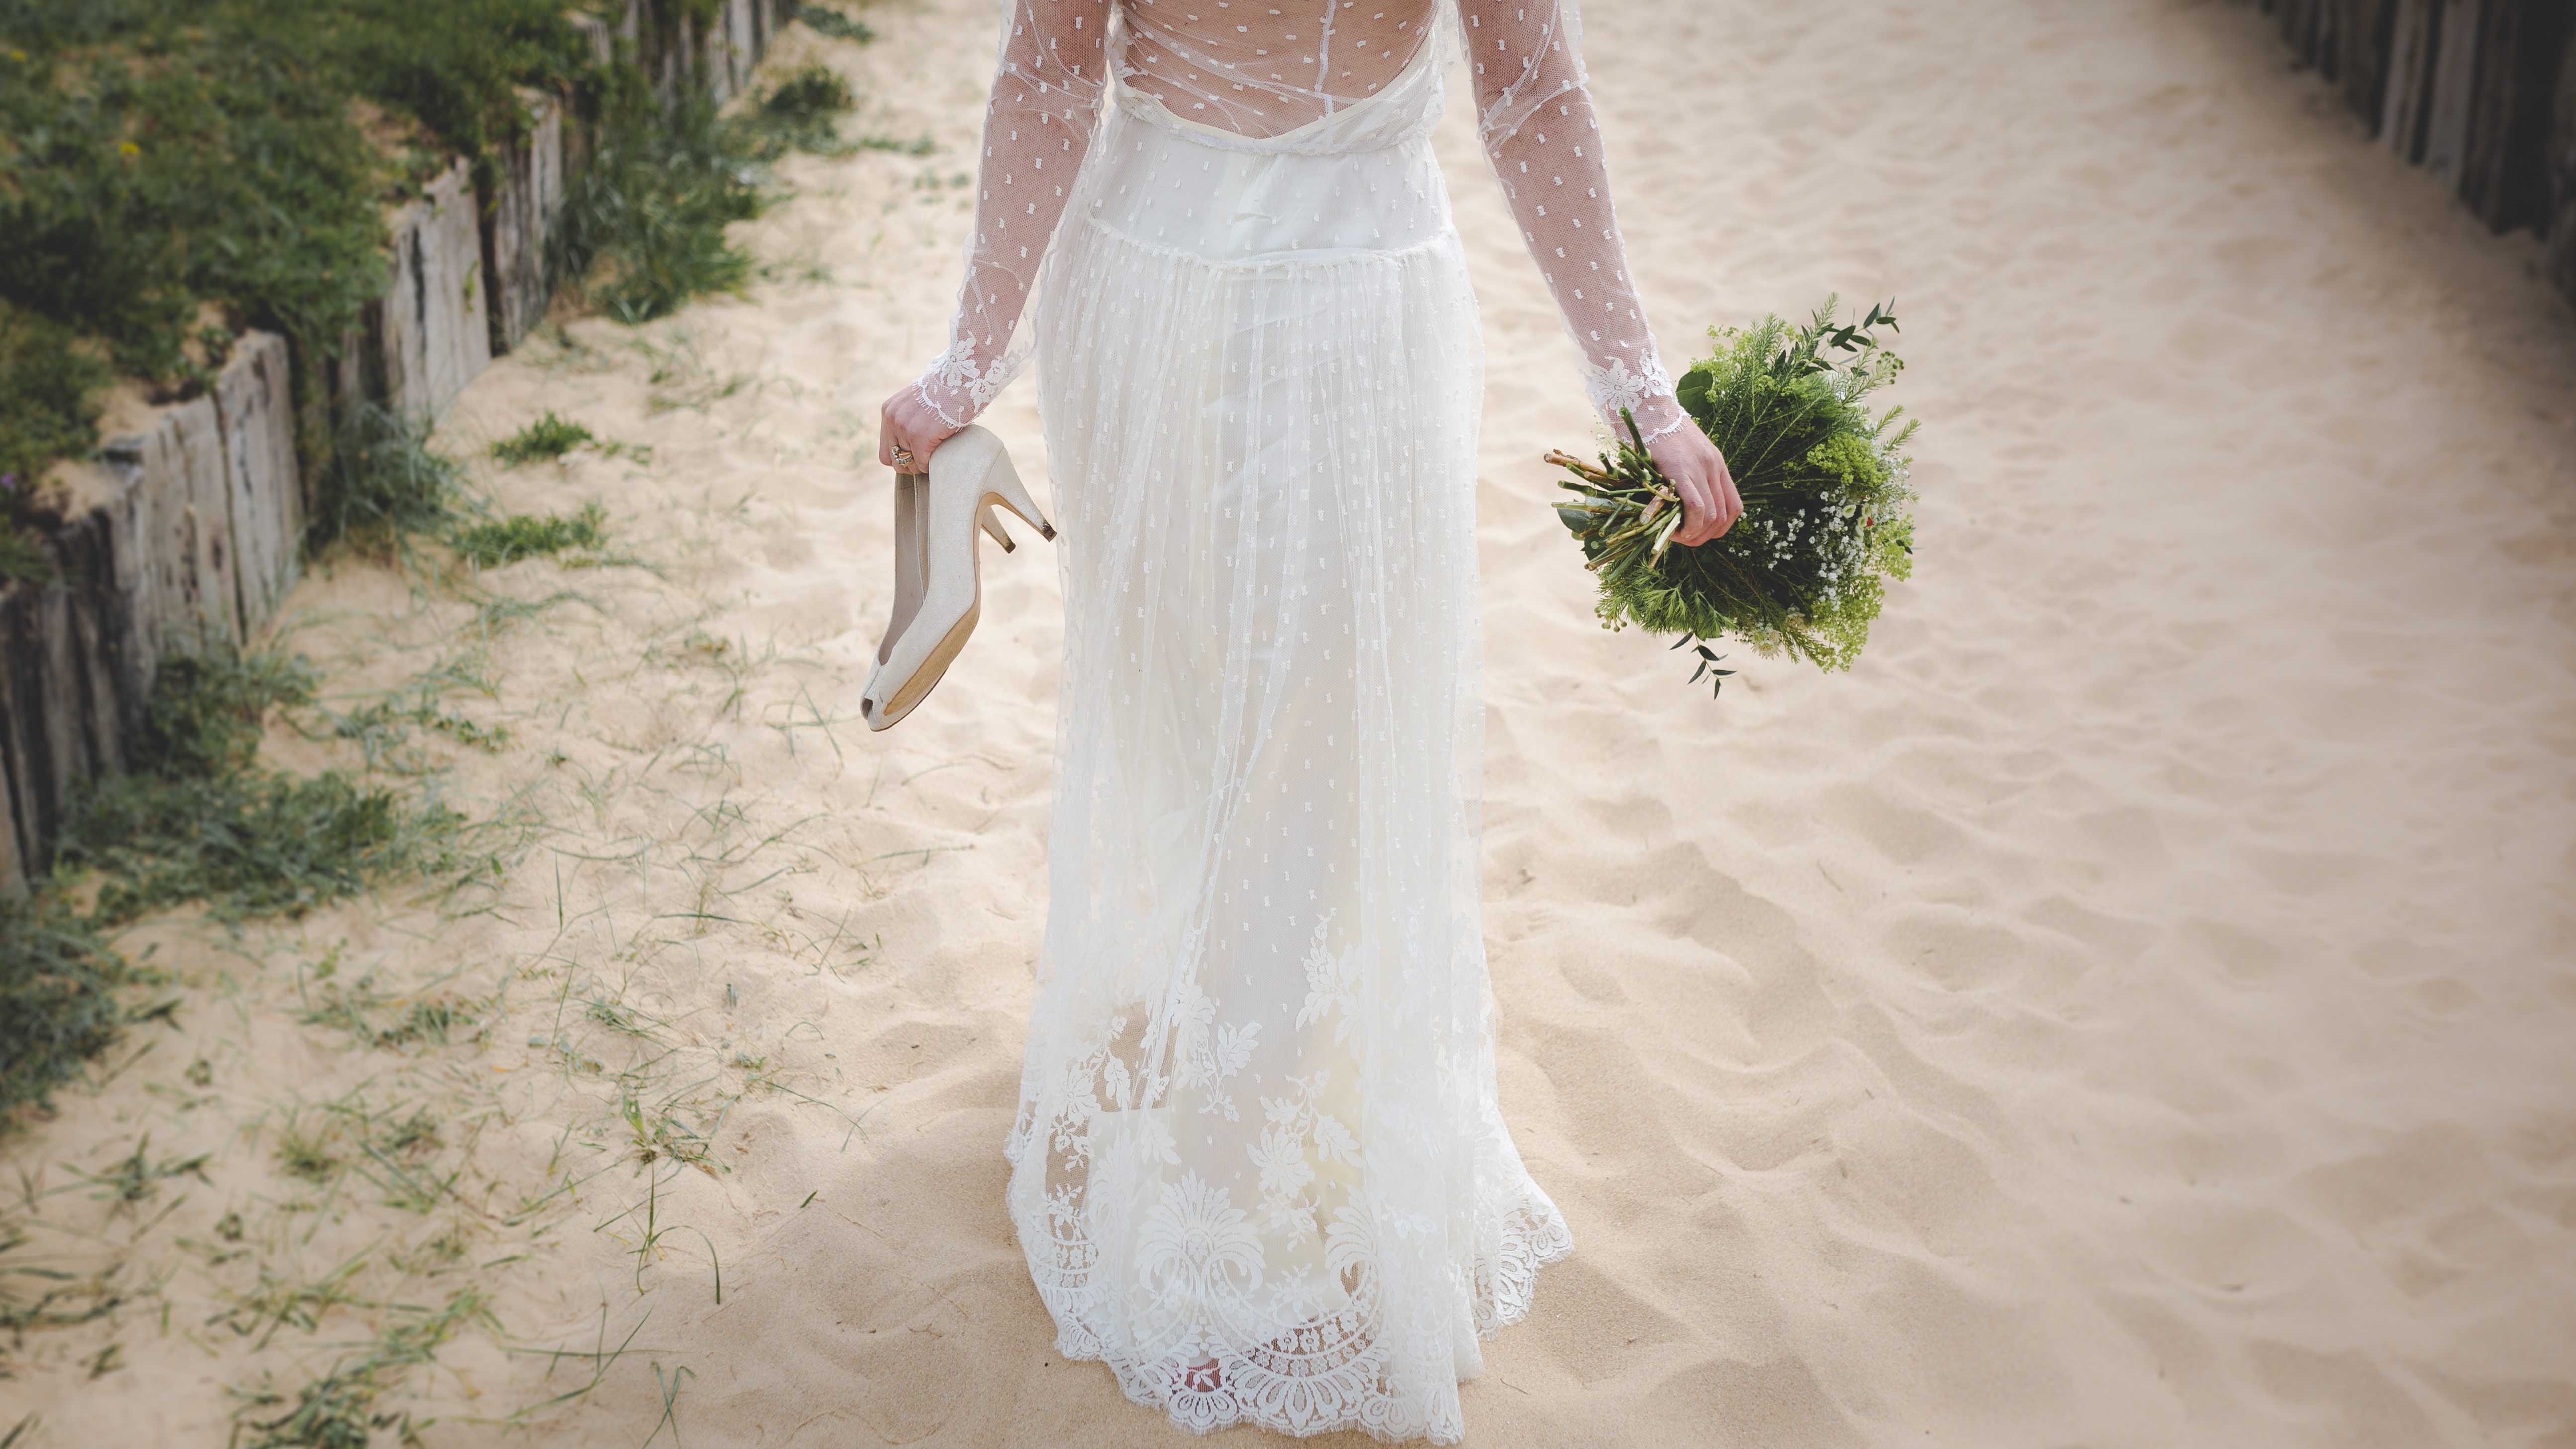 Eine Braut in einem weißen Hochzeitskleid, die auf dem Sand läuft.